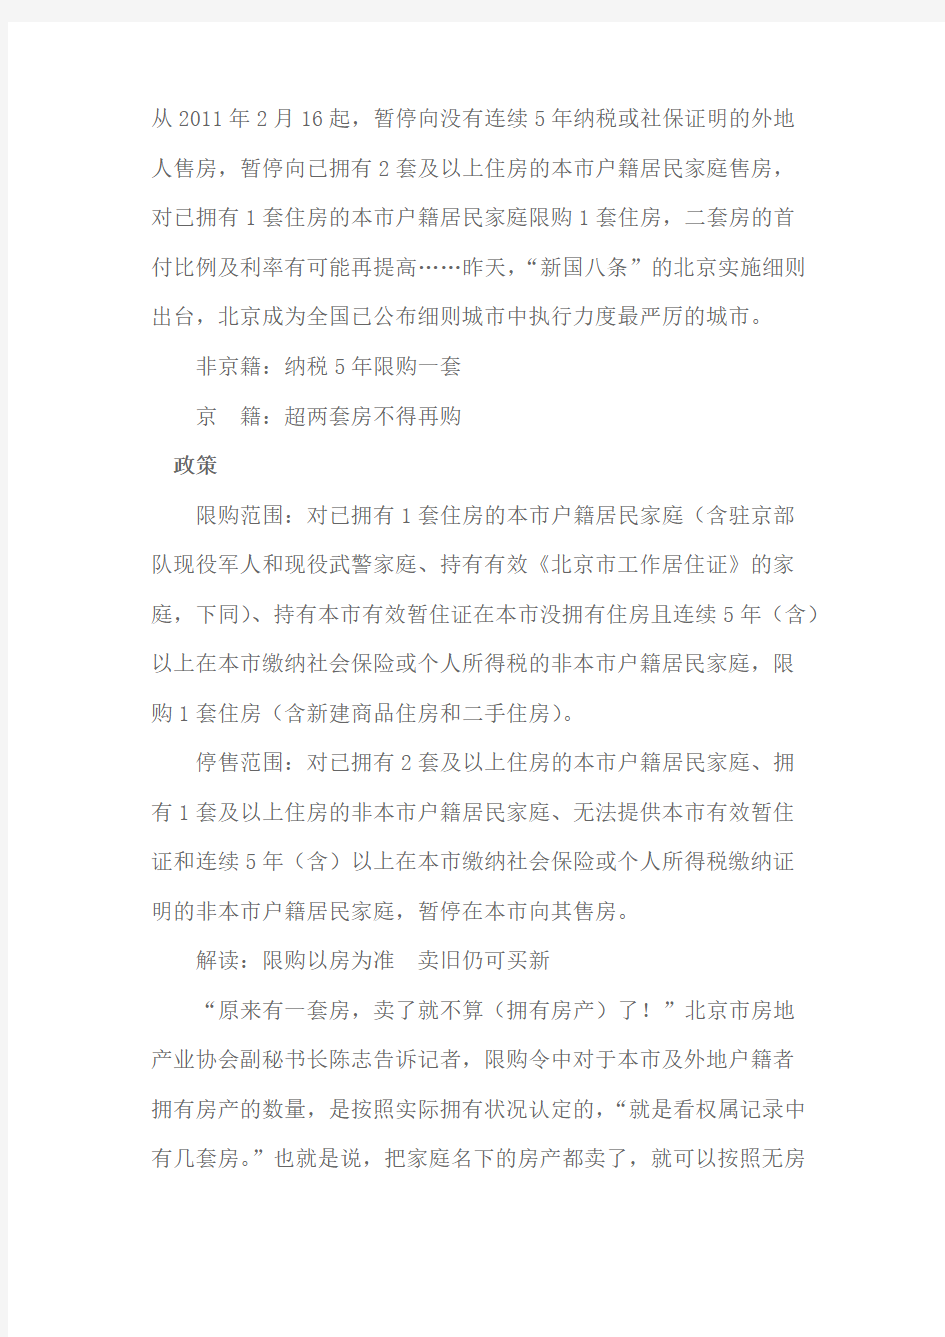 [vip专享]2013年北京购房政策